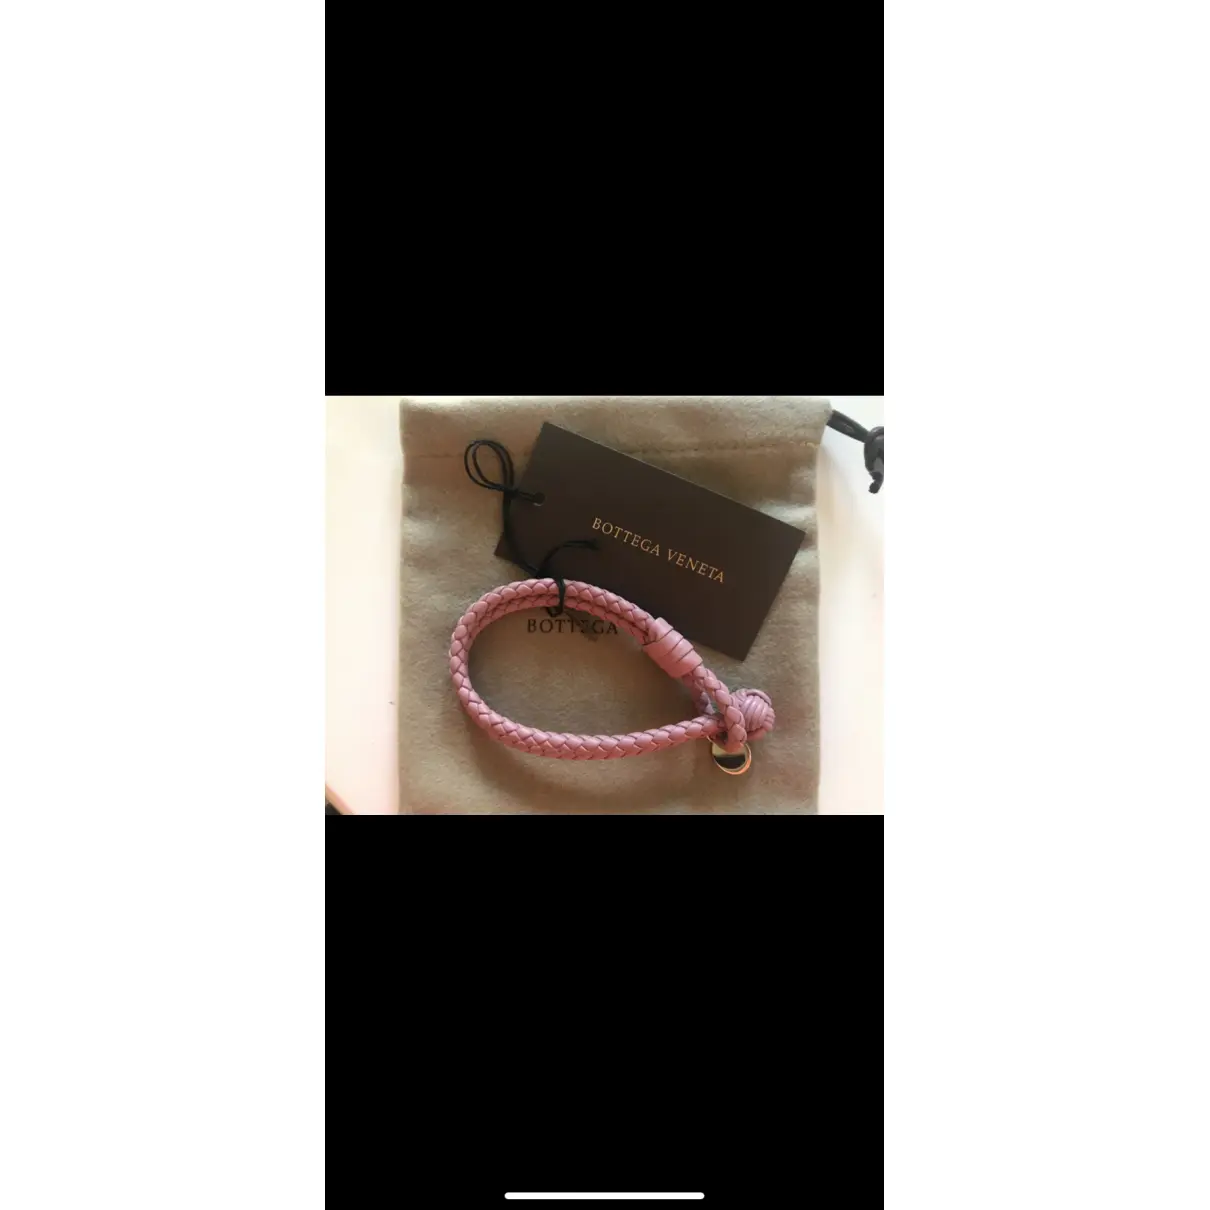 Buy Bottega Veneta Leather bracelet online